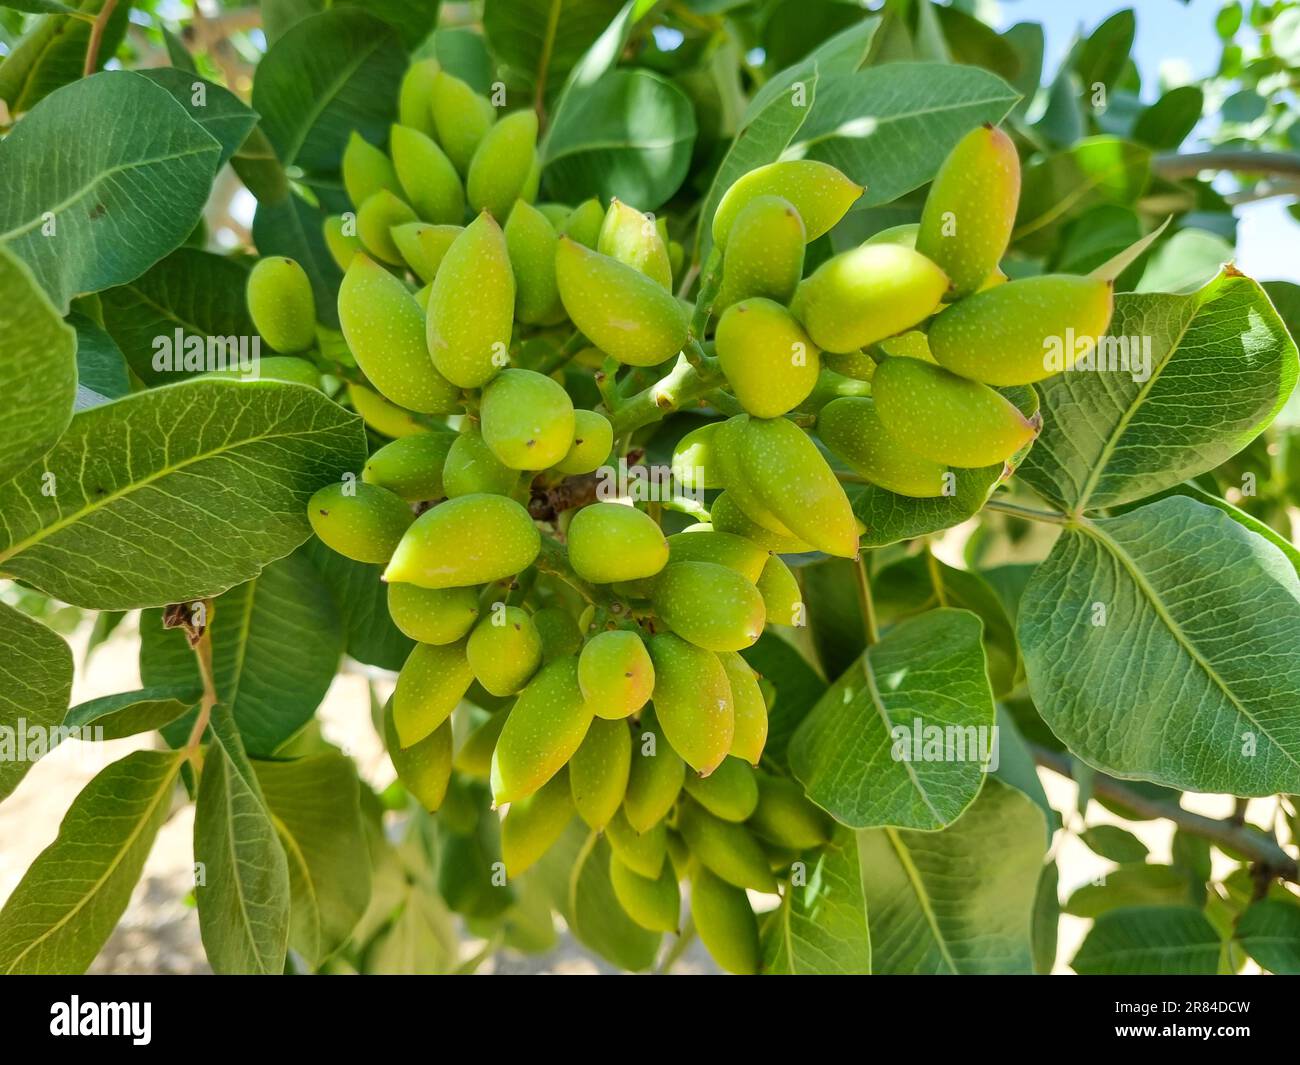 Jeunes pistaches vertes fraîches sur l'arbre Banque D'Images